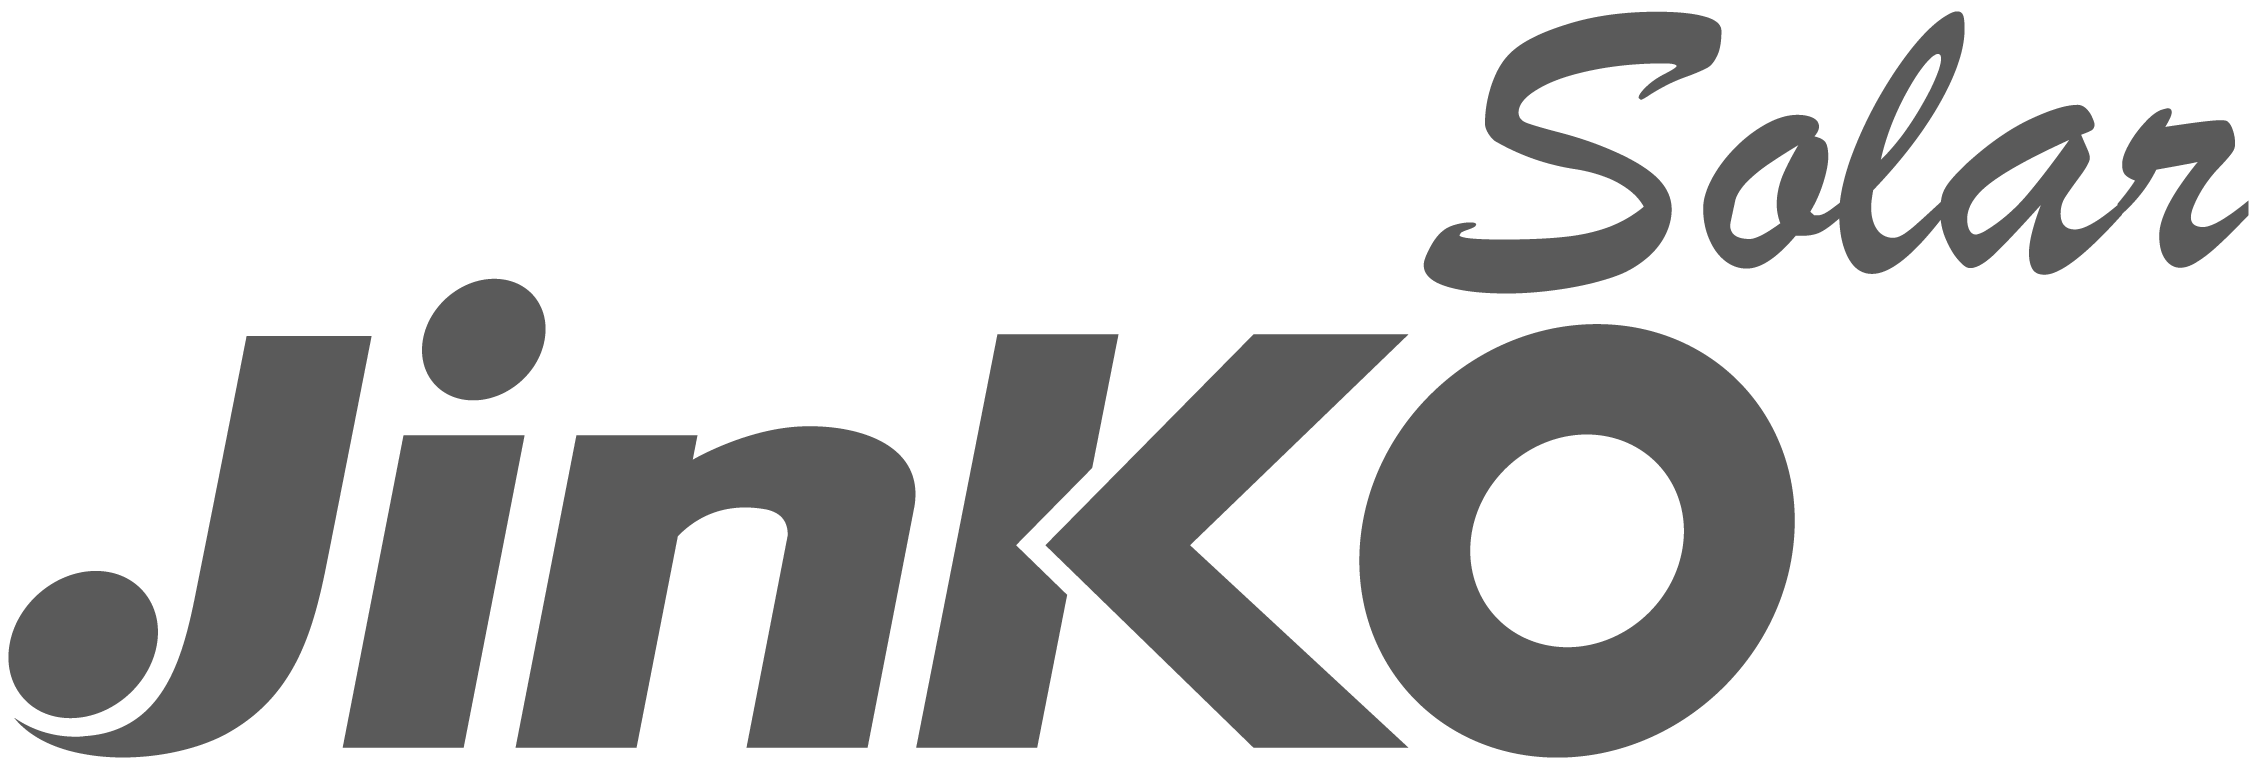 logo jinko